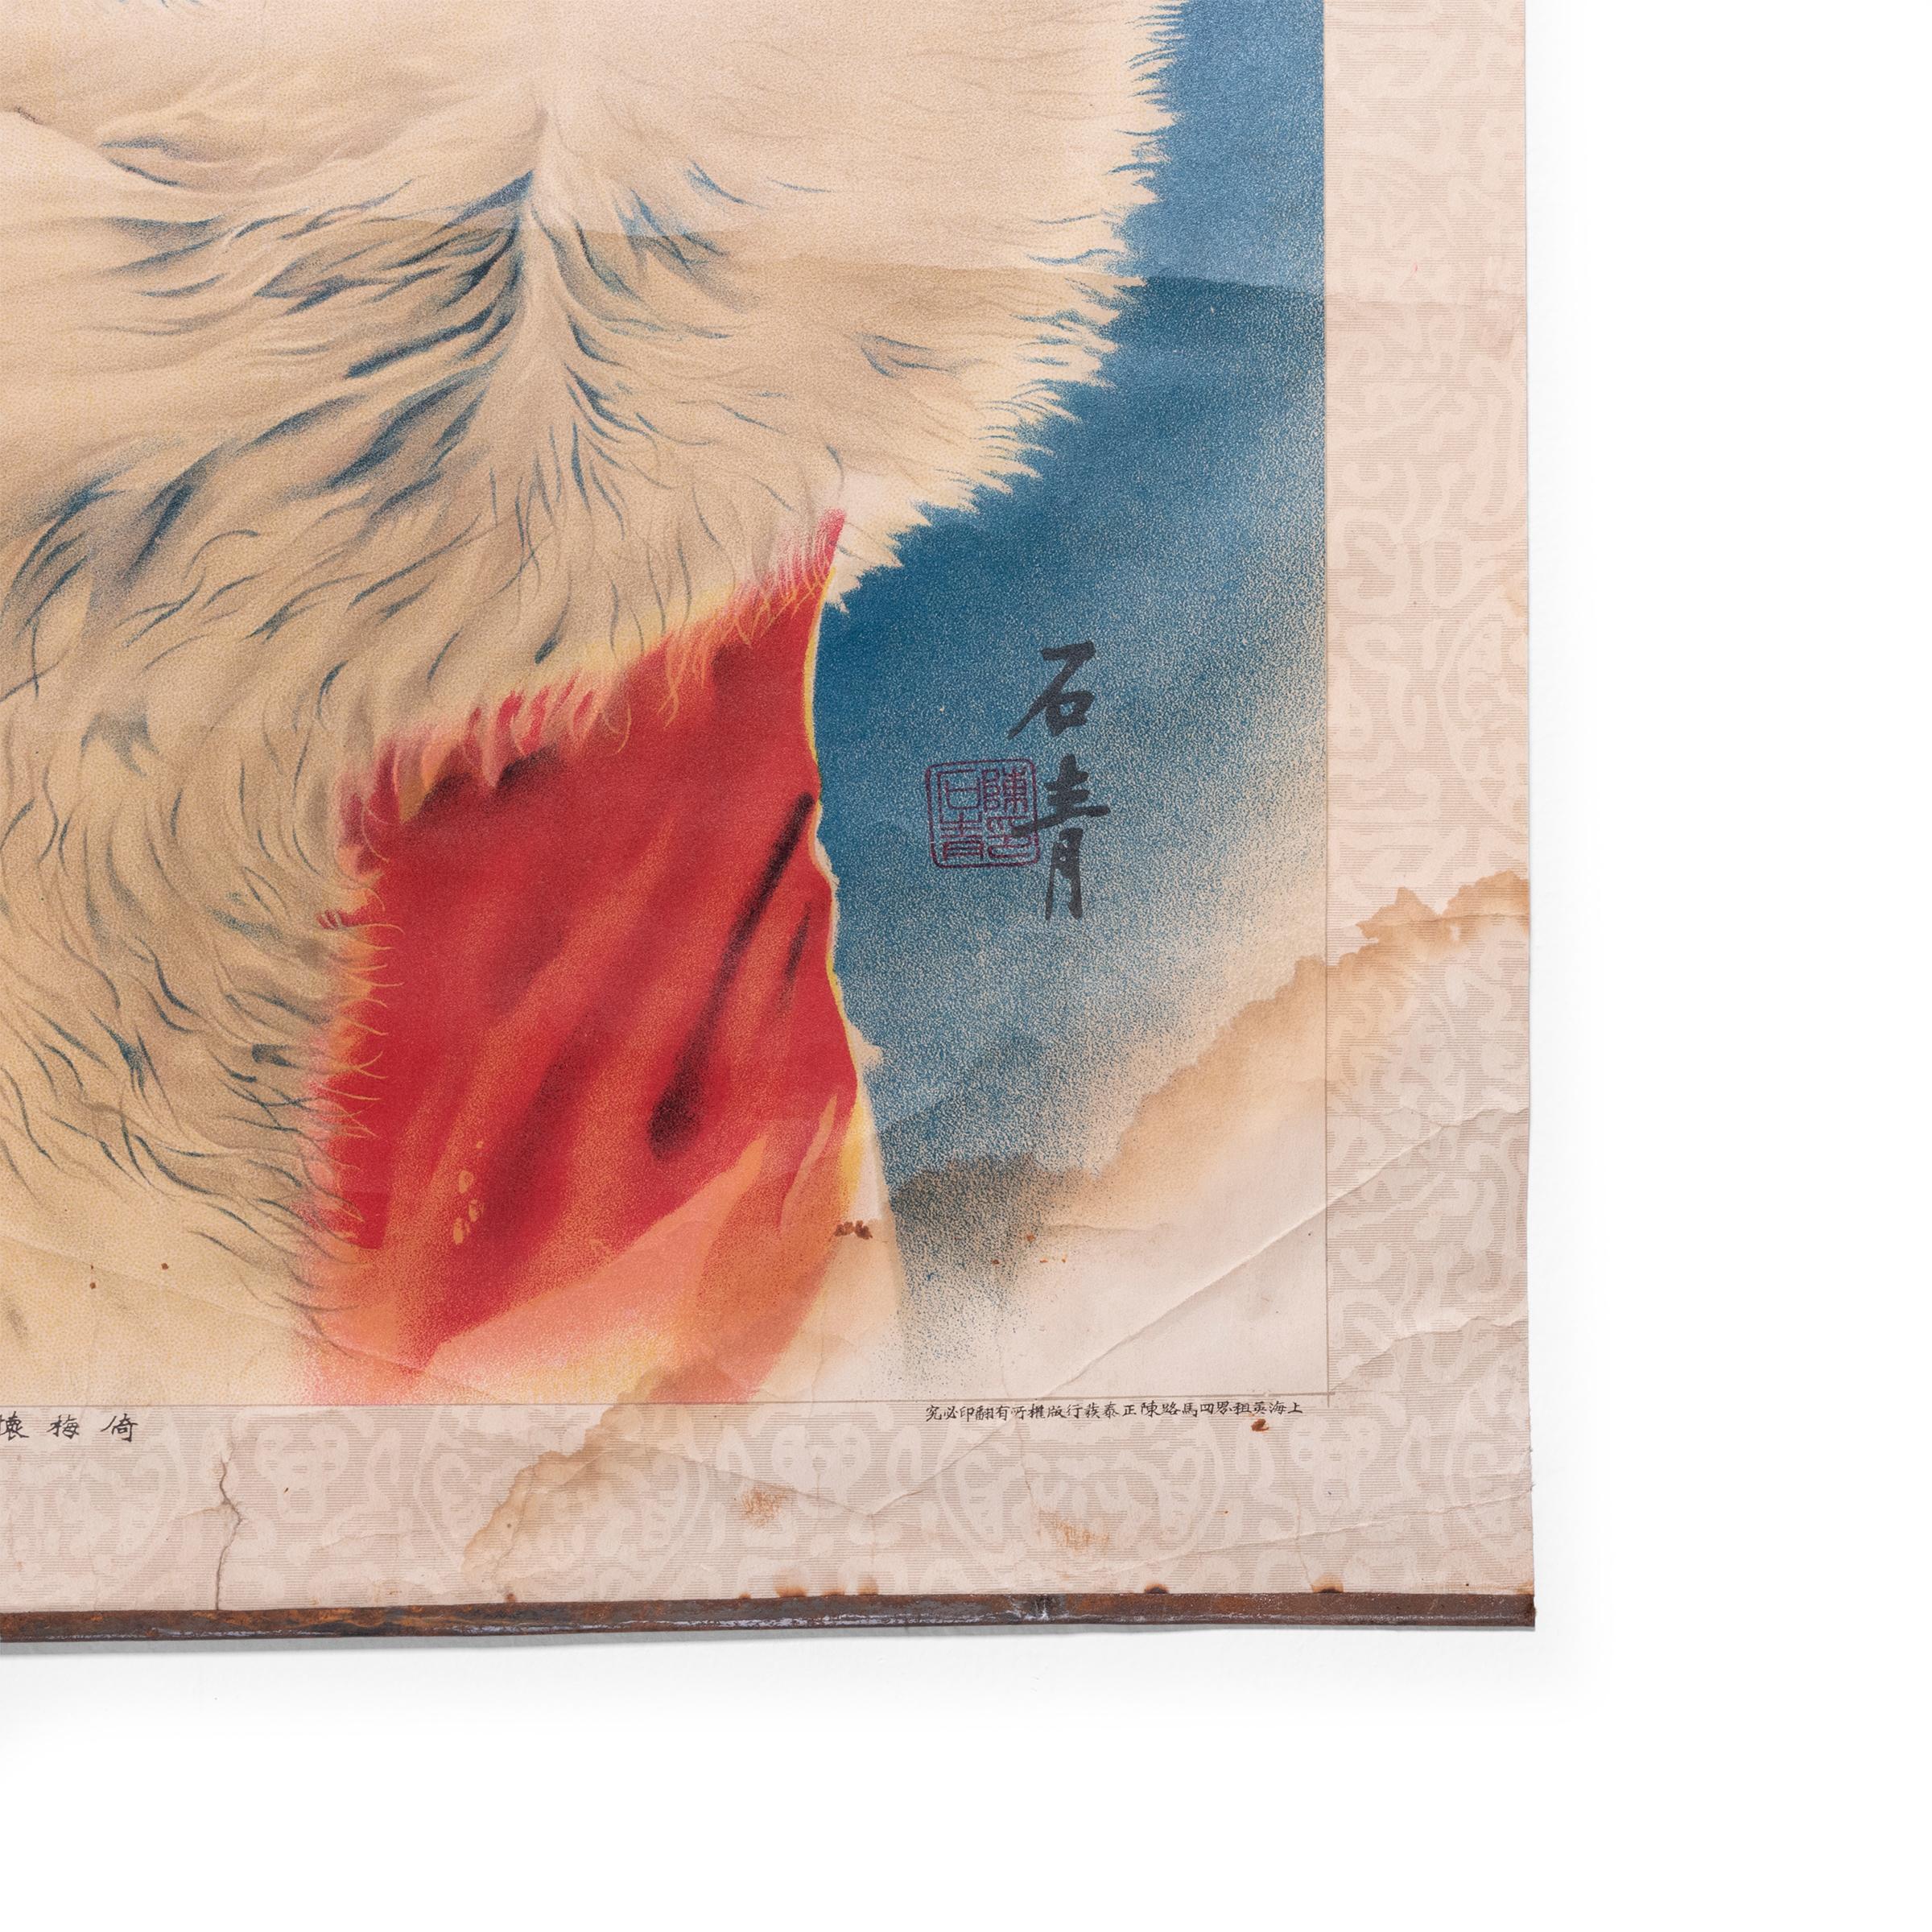 Dieses Plakat aus den 1930er Jahren vereint die Detailgenauigkeit der traditionellen chinesischen Malerei mit der Kunst der Farblithografie - und einer Prise Gewagtheit. Das Plakat zeigt eine junge Frau in einem pelzverbrämten Mantel mit